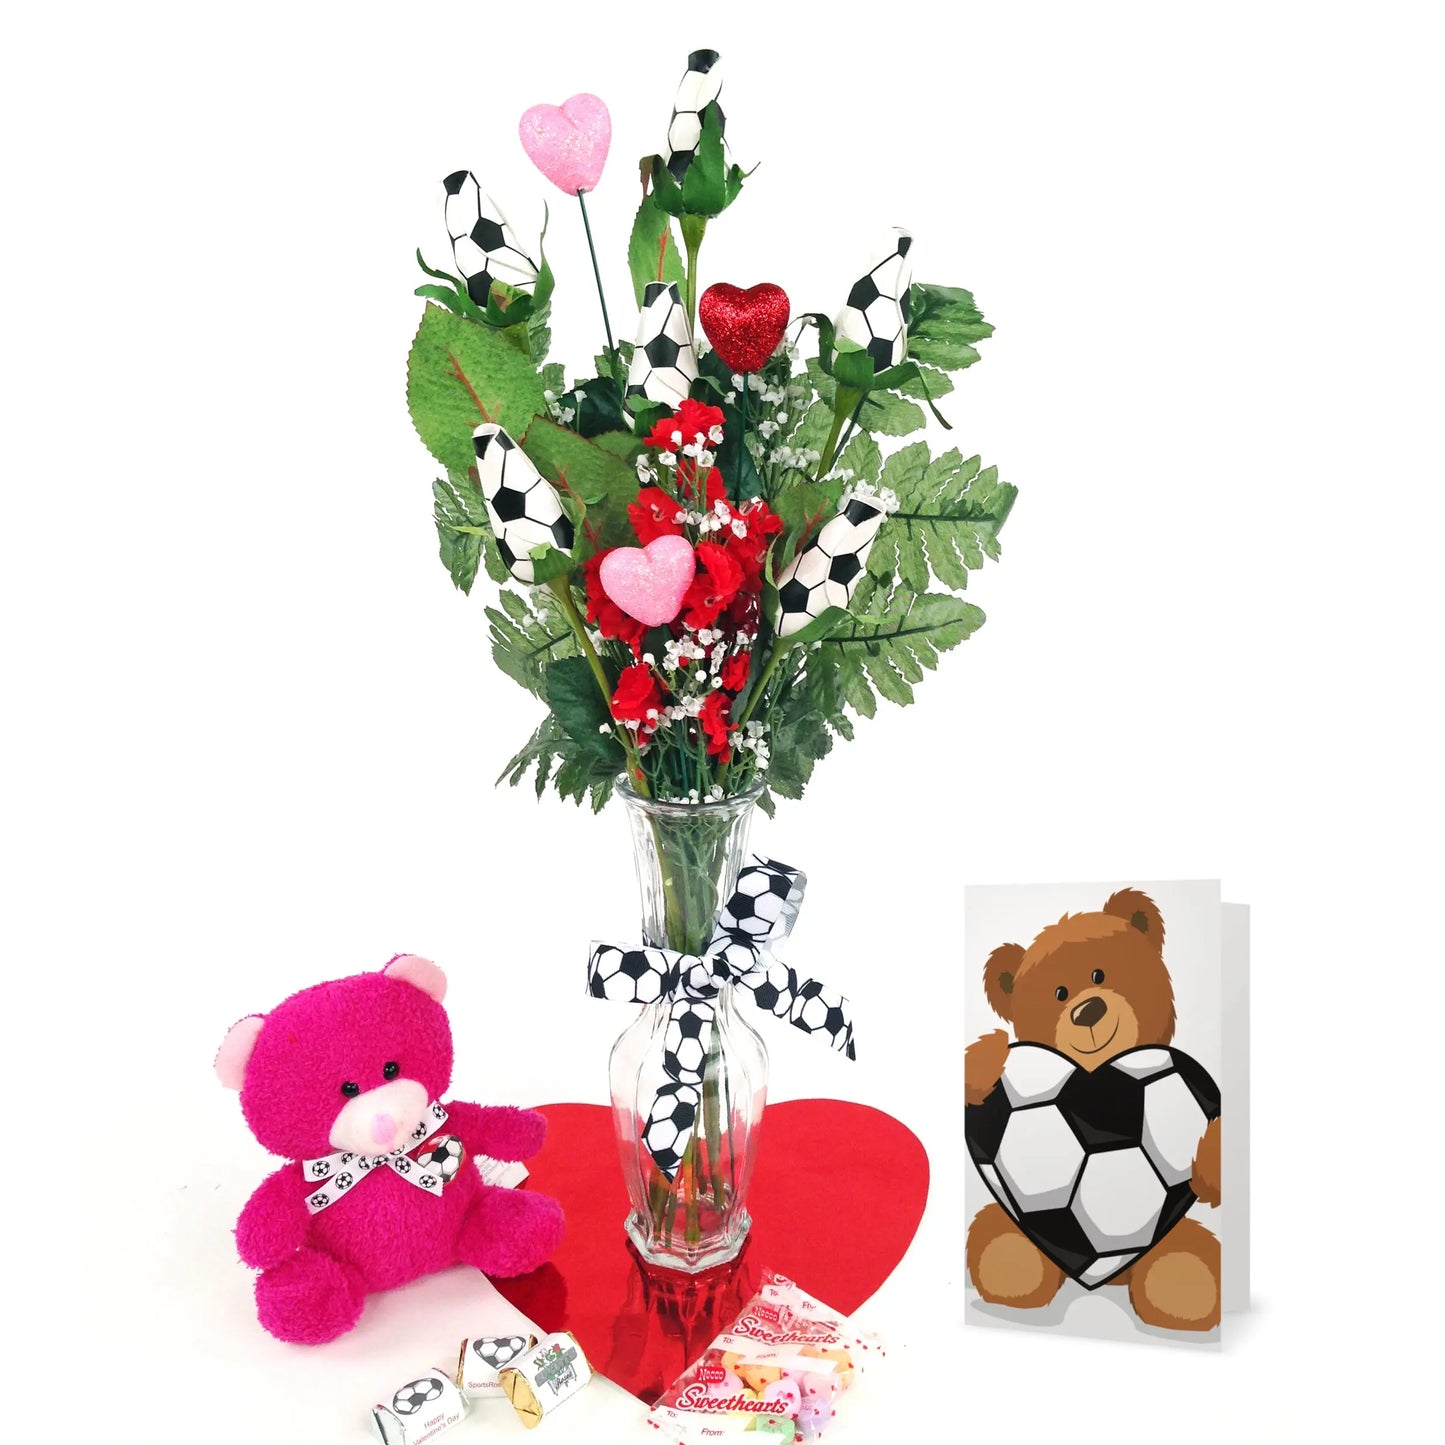 Soccer Rose Valentine's Day Vase Arrangement Sports Roses  